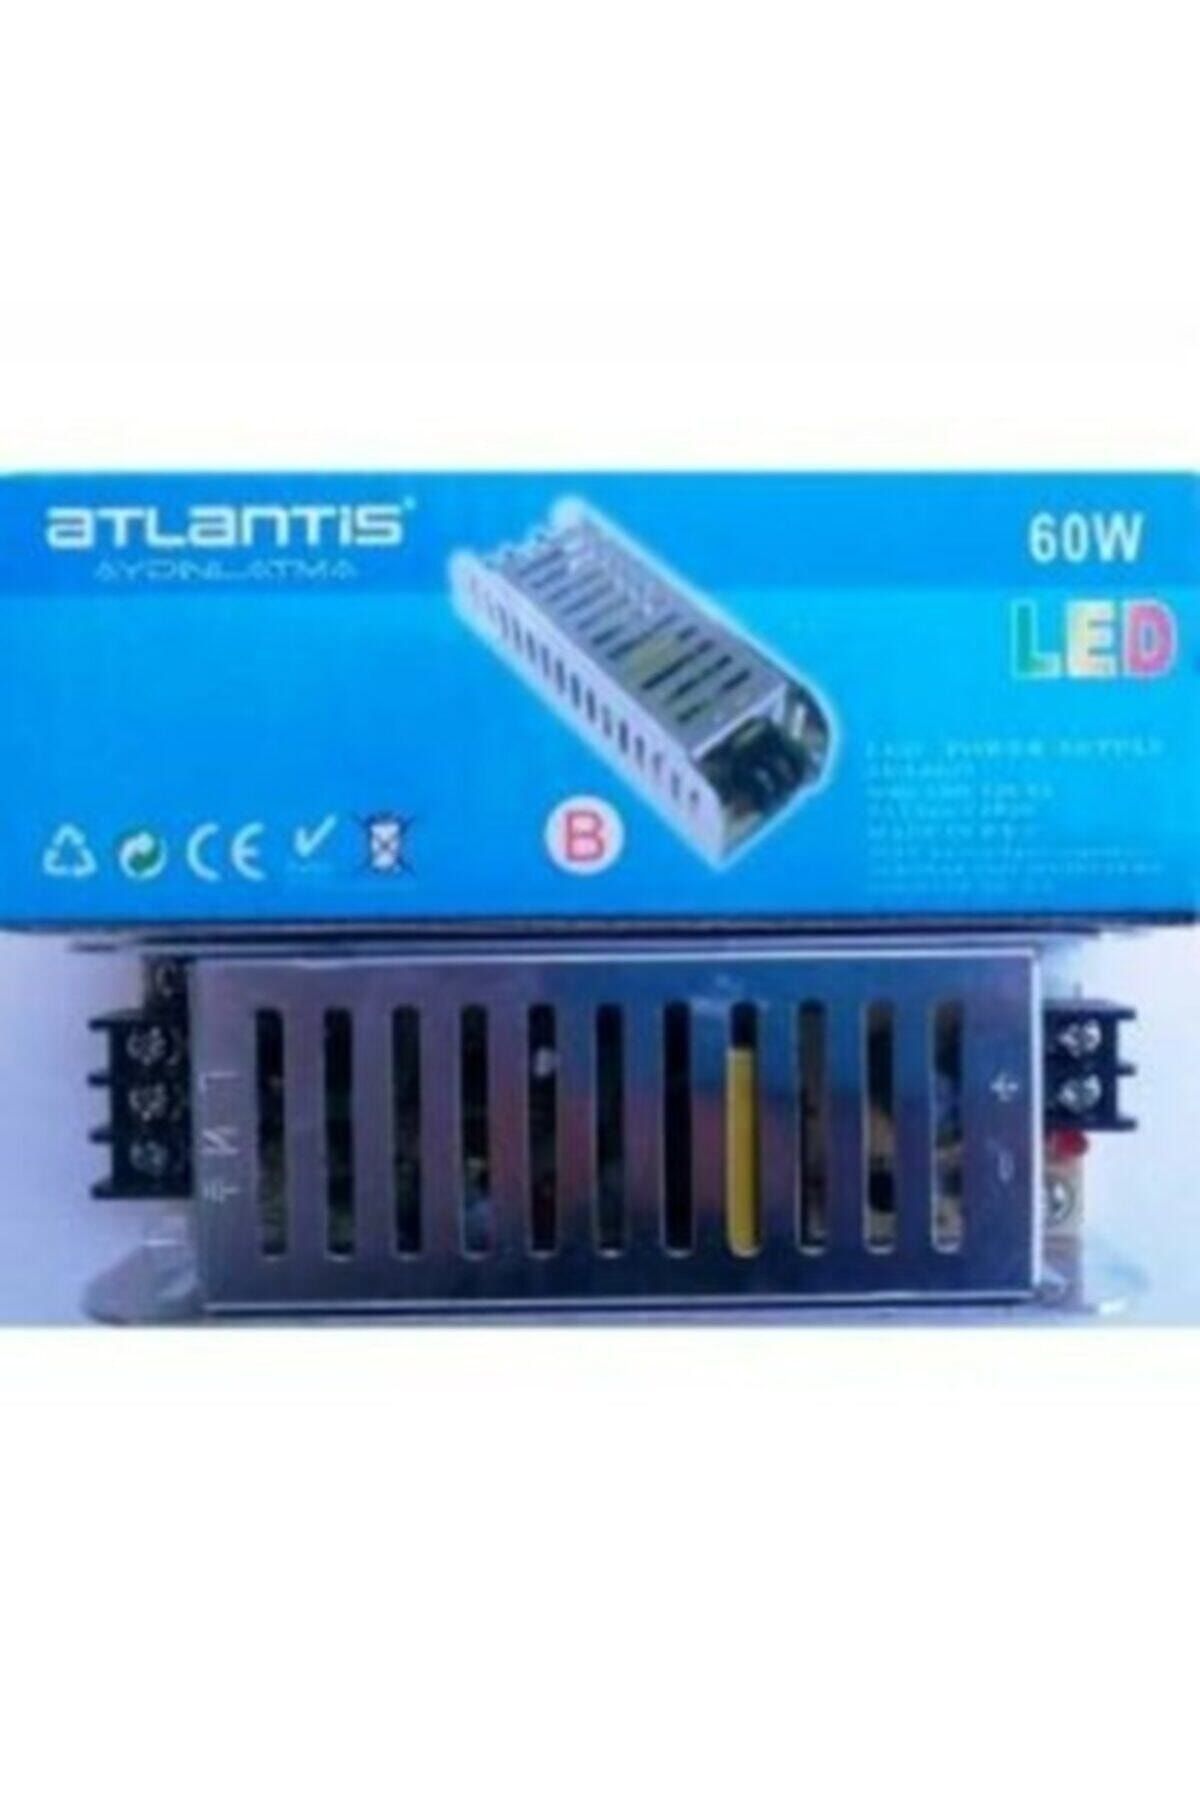 Atlantis 12v 5a 60w Slim Şerit Led Trafosu Fiyatı, Yorumları - Trendyol